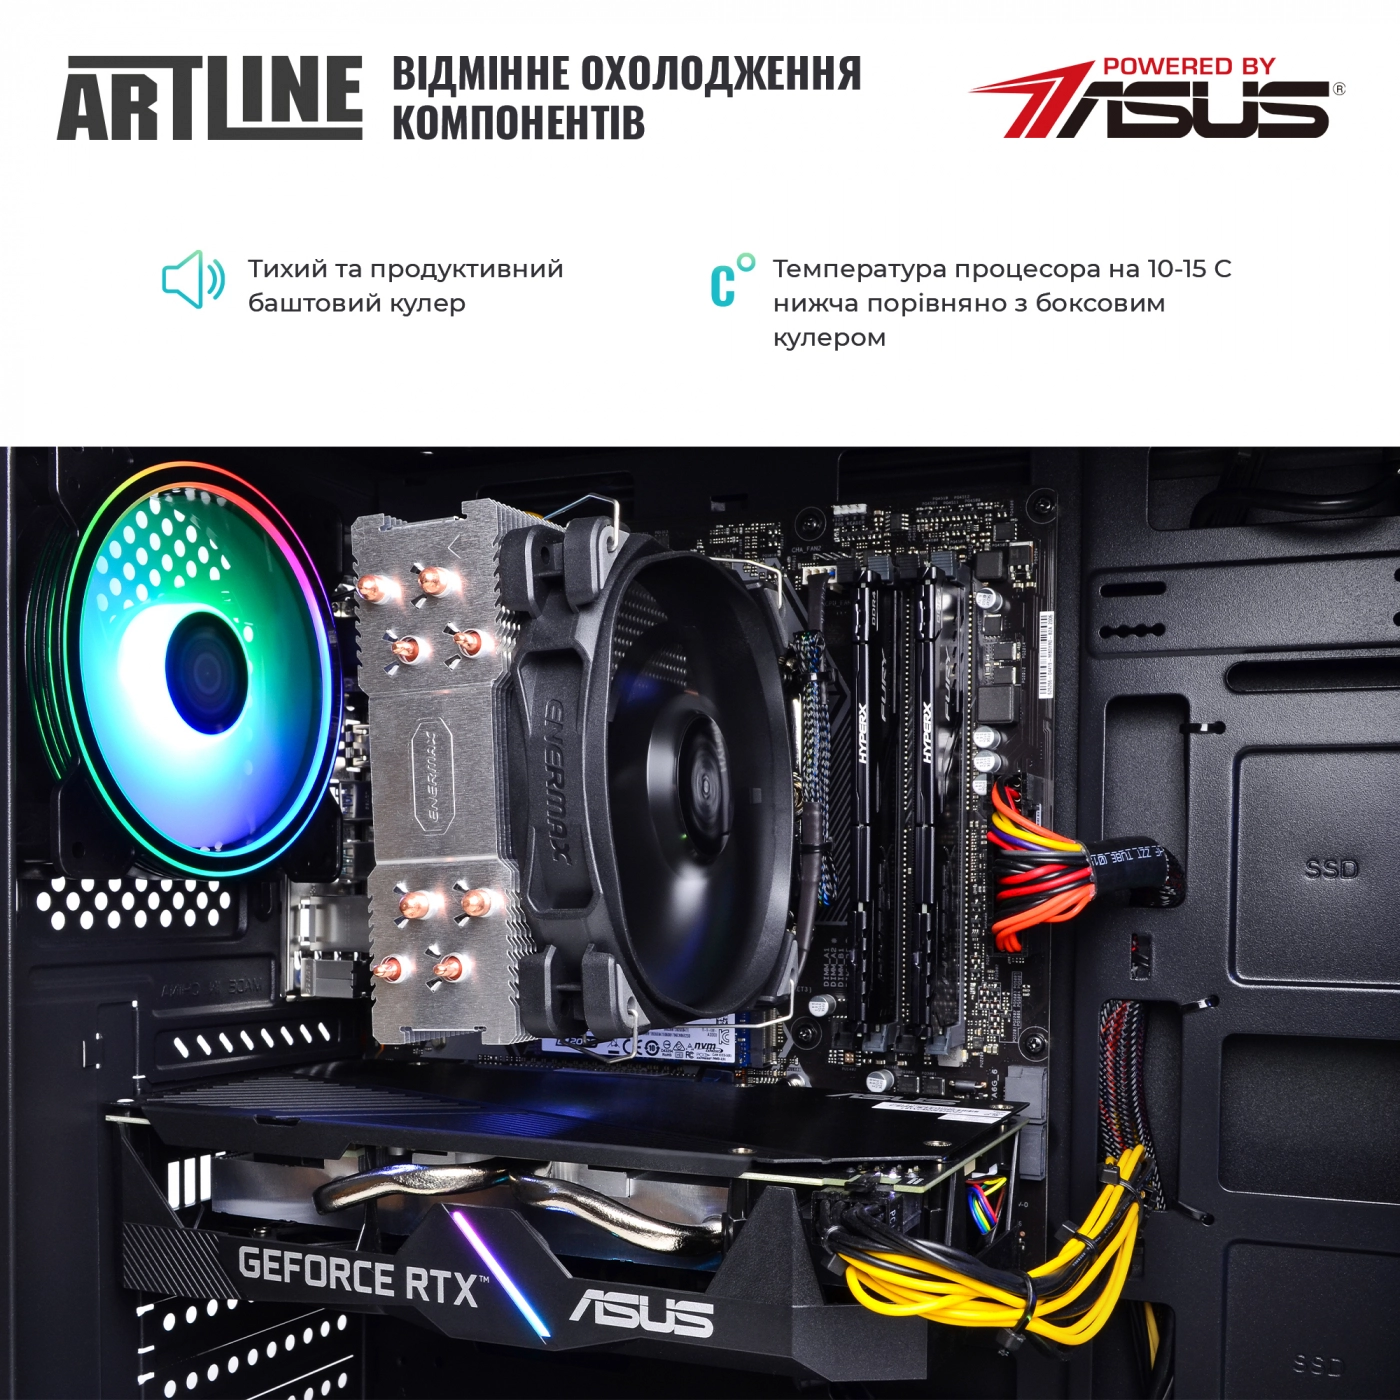 Купить Компьютер ARTLINE Gaming X82v10 - фото 7